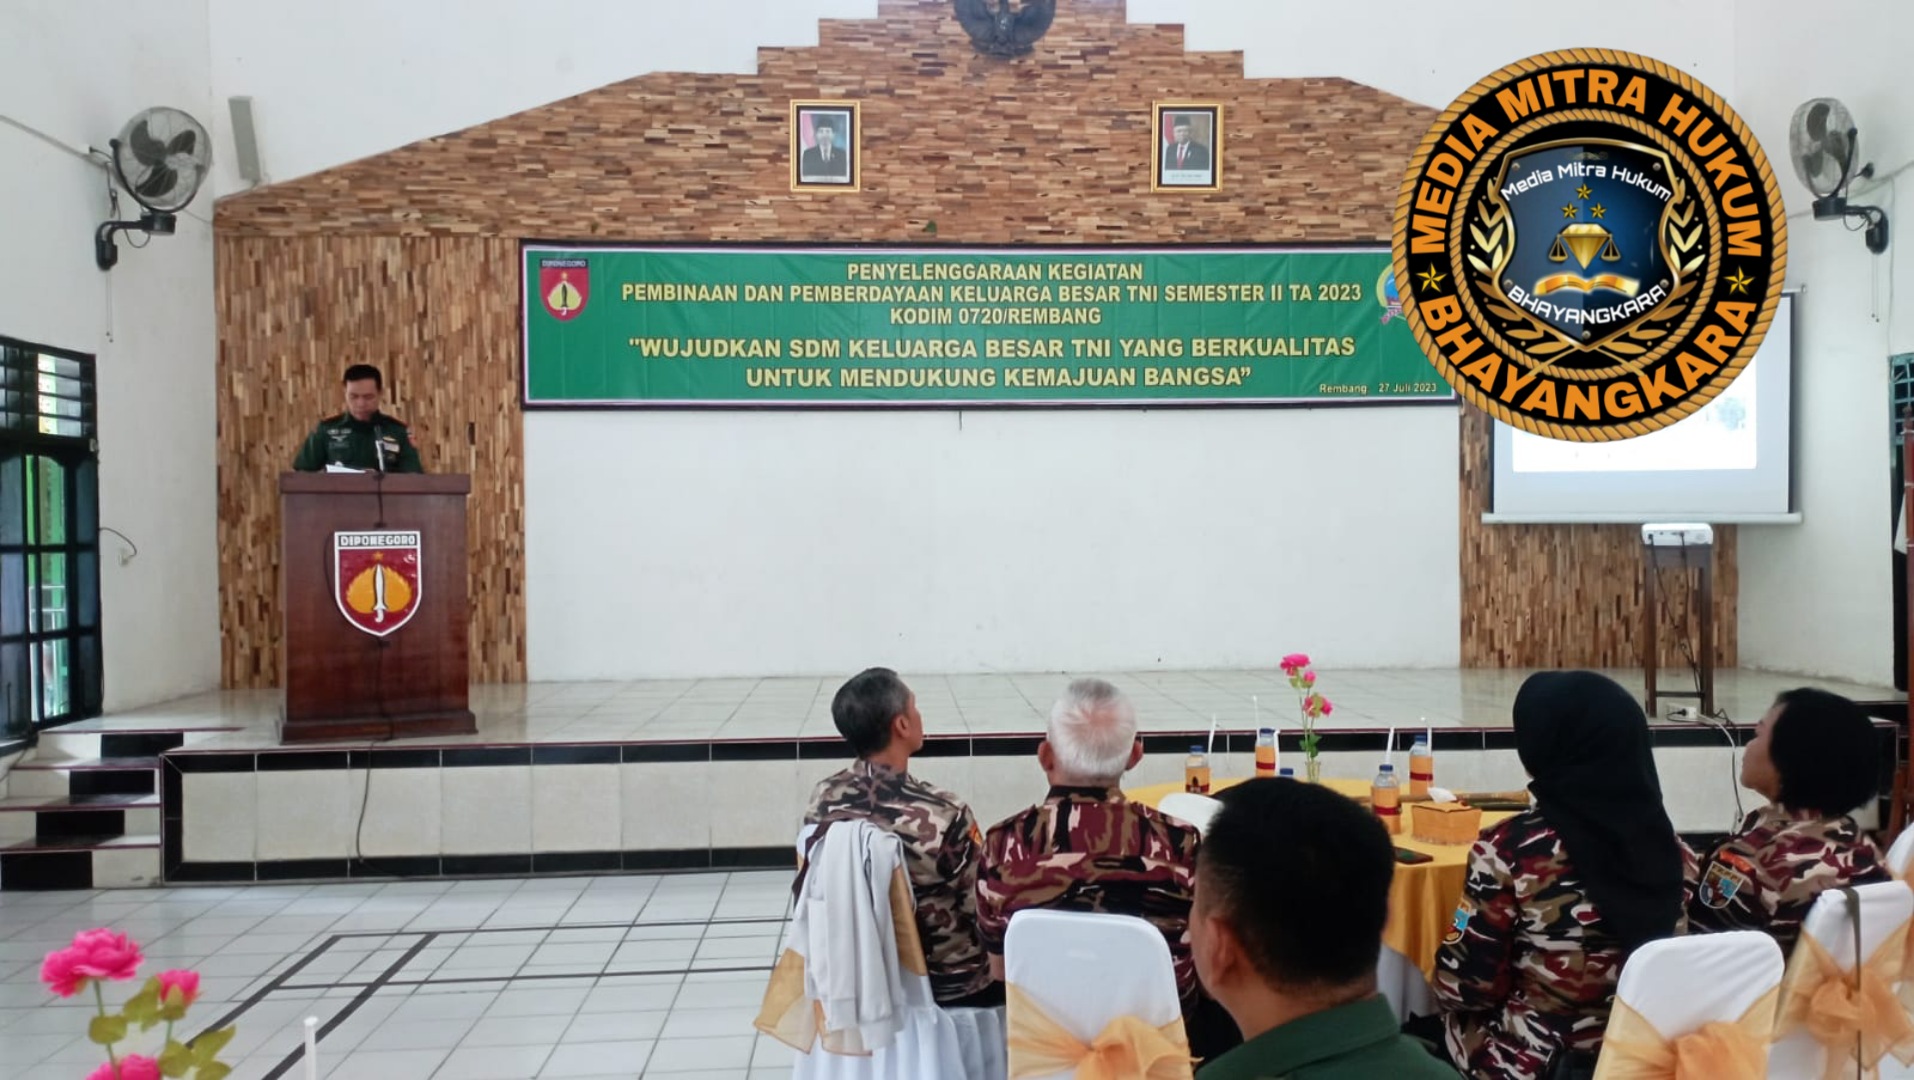 Kodim Rembang Adakan Pembinaan Dan Pemberdayaan Keluarga Besar TNI